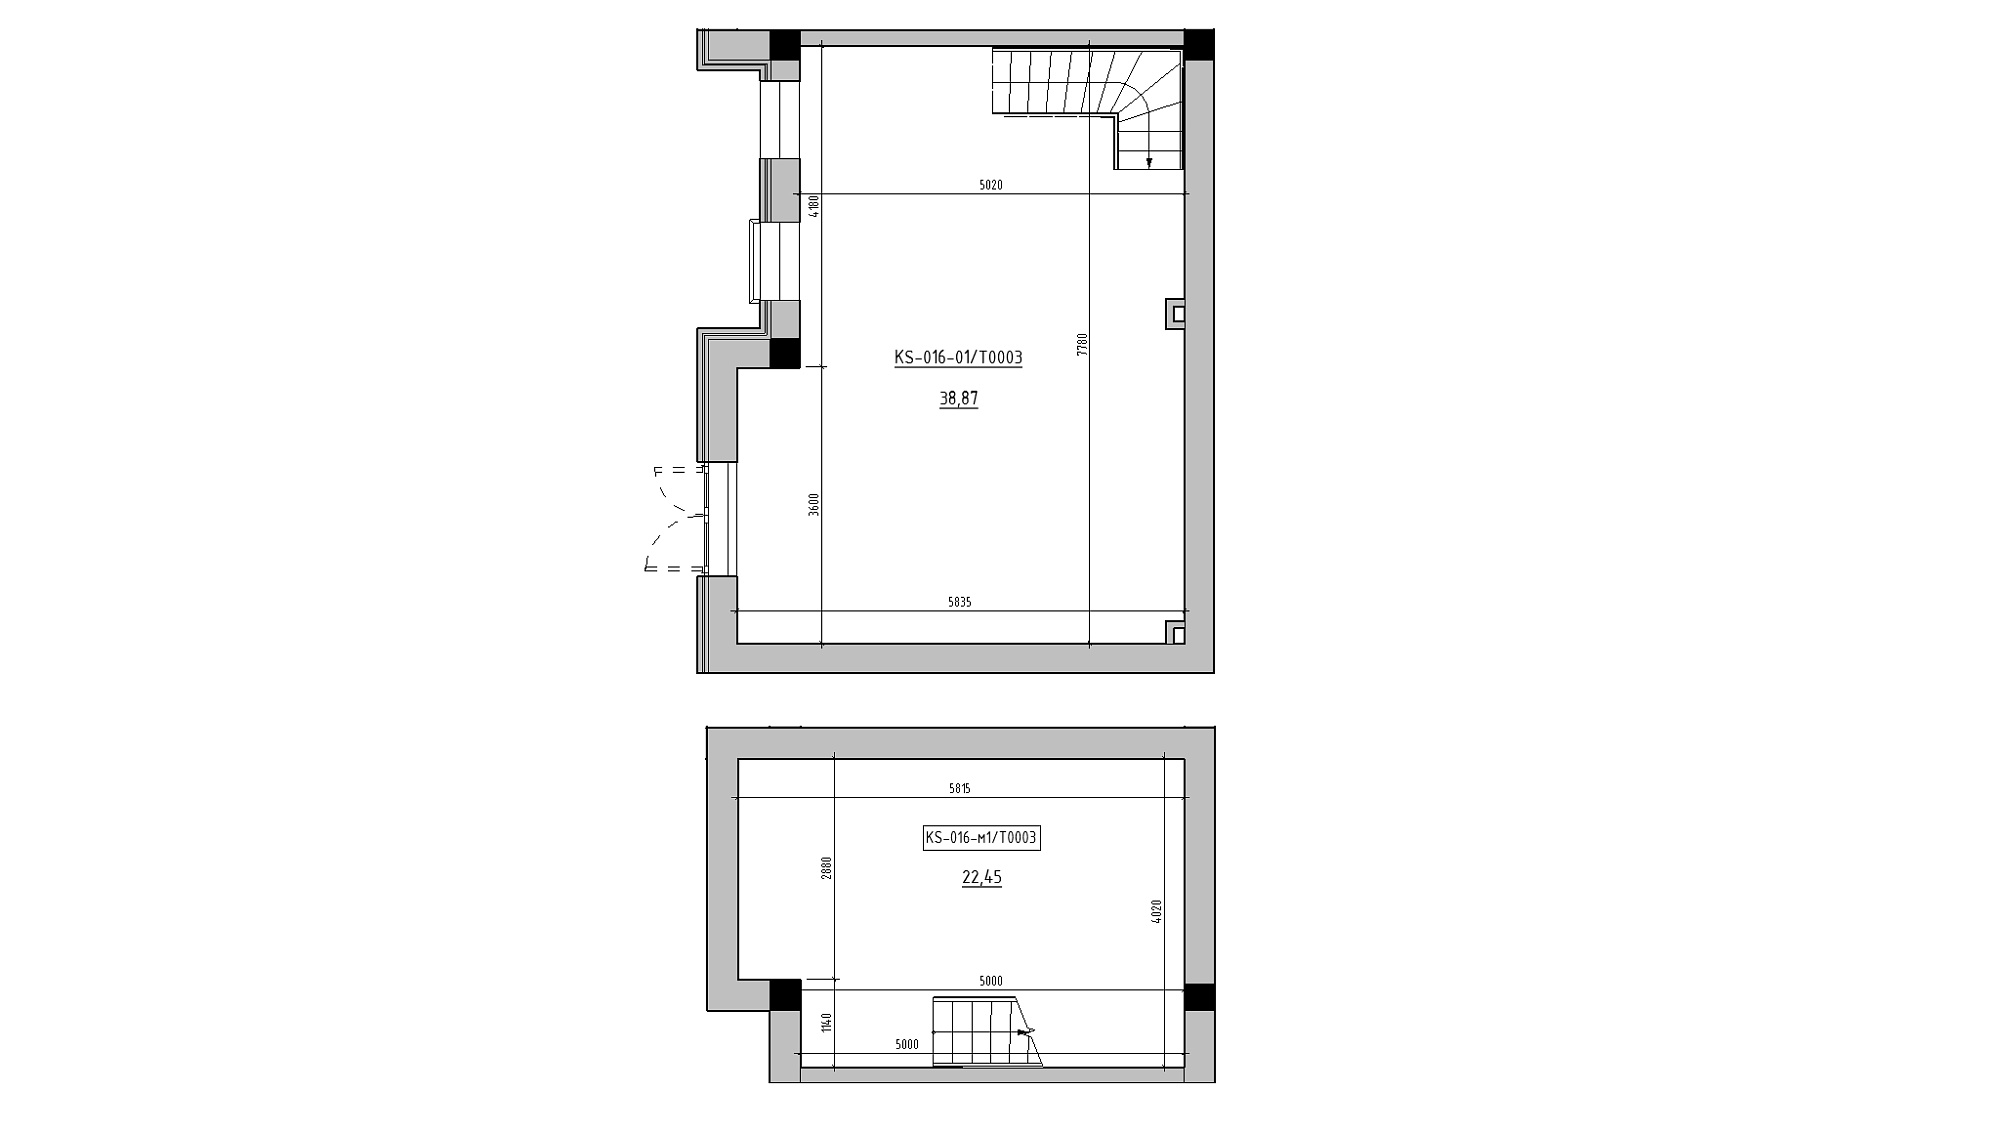 Planning Commercial premises area 61.32m2, KS-016-01/Т003.